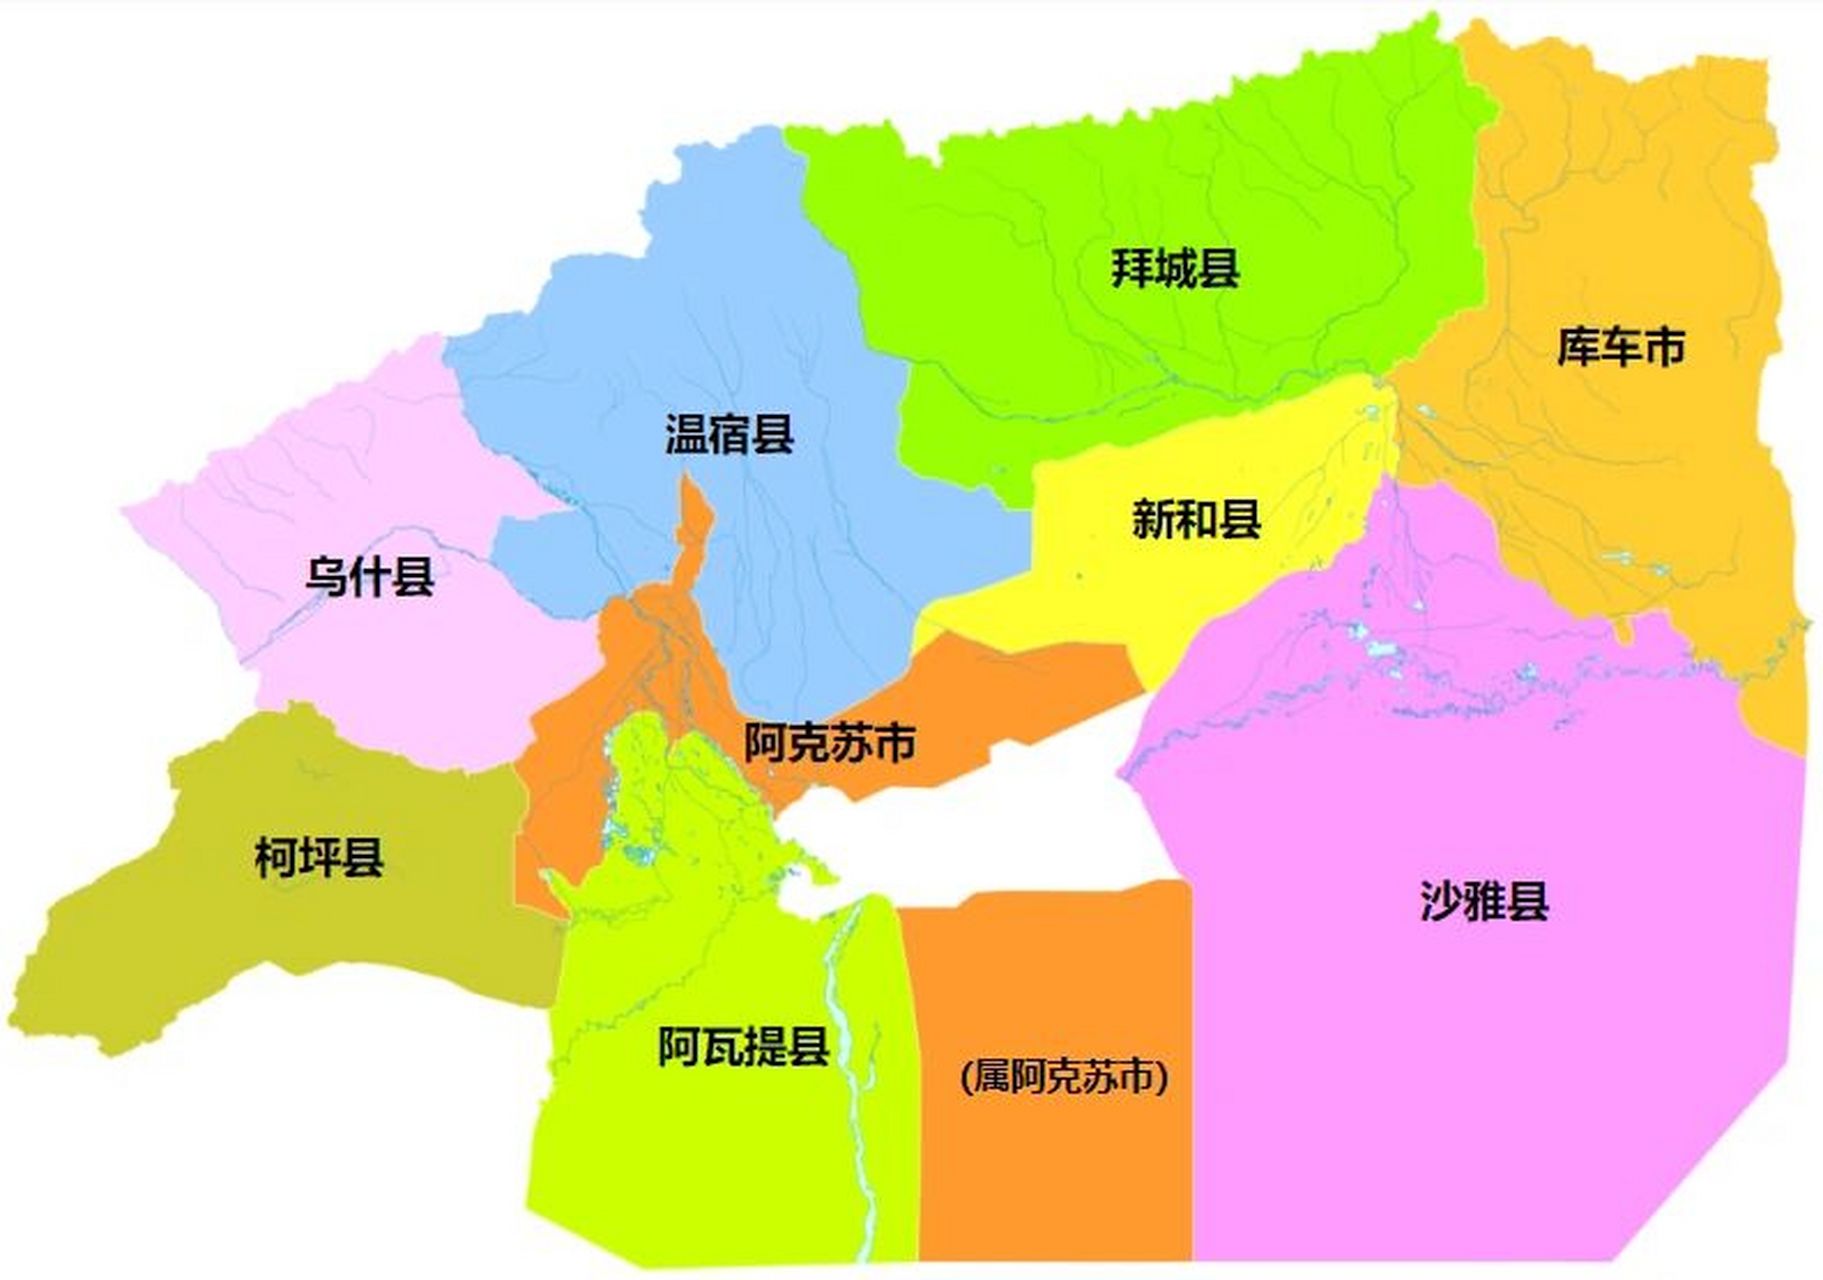 阿克苏行政区划 阿克苏地区,新疆维吾尔自治区辖地区,总面积为13